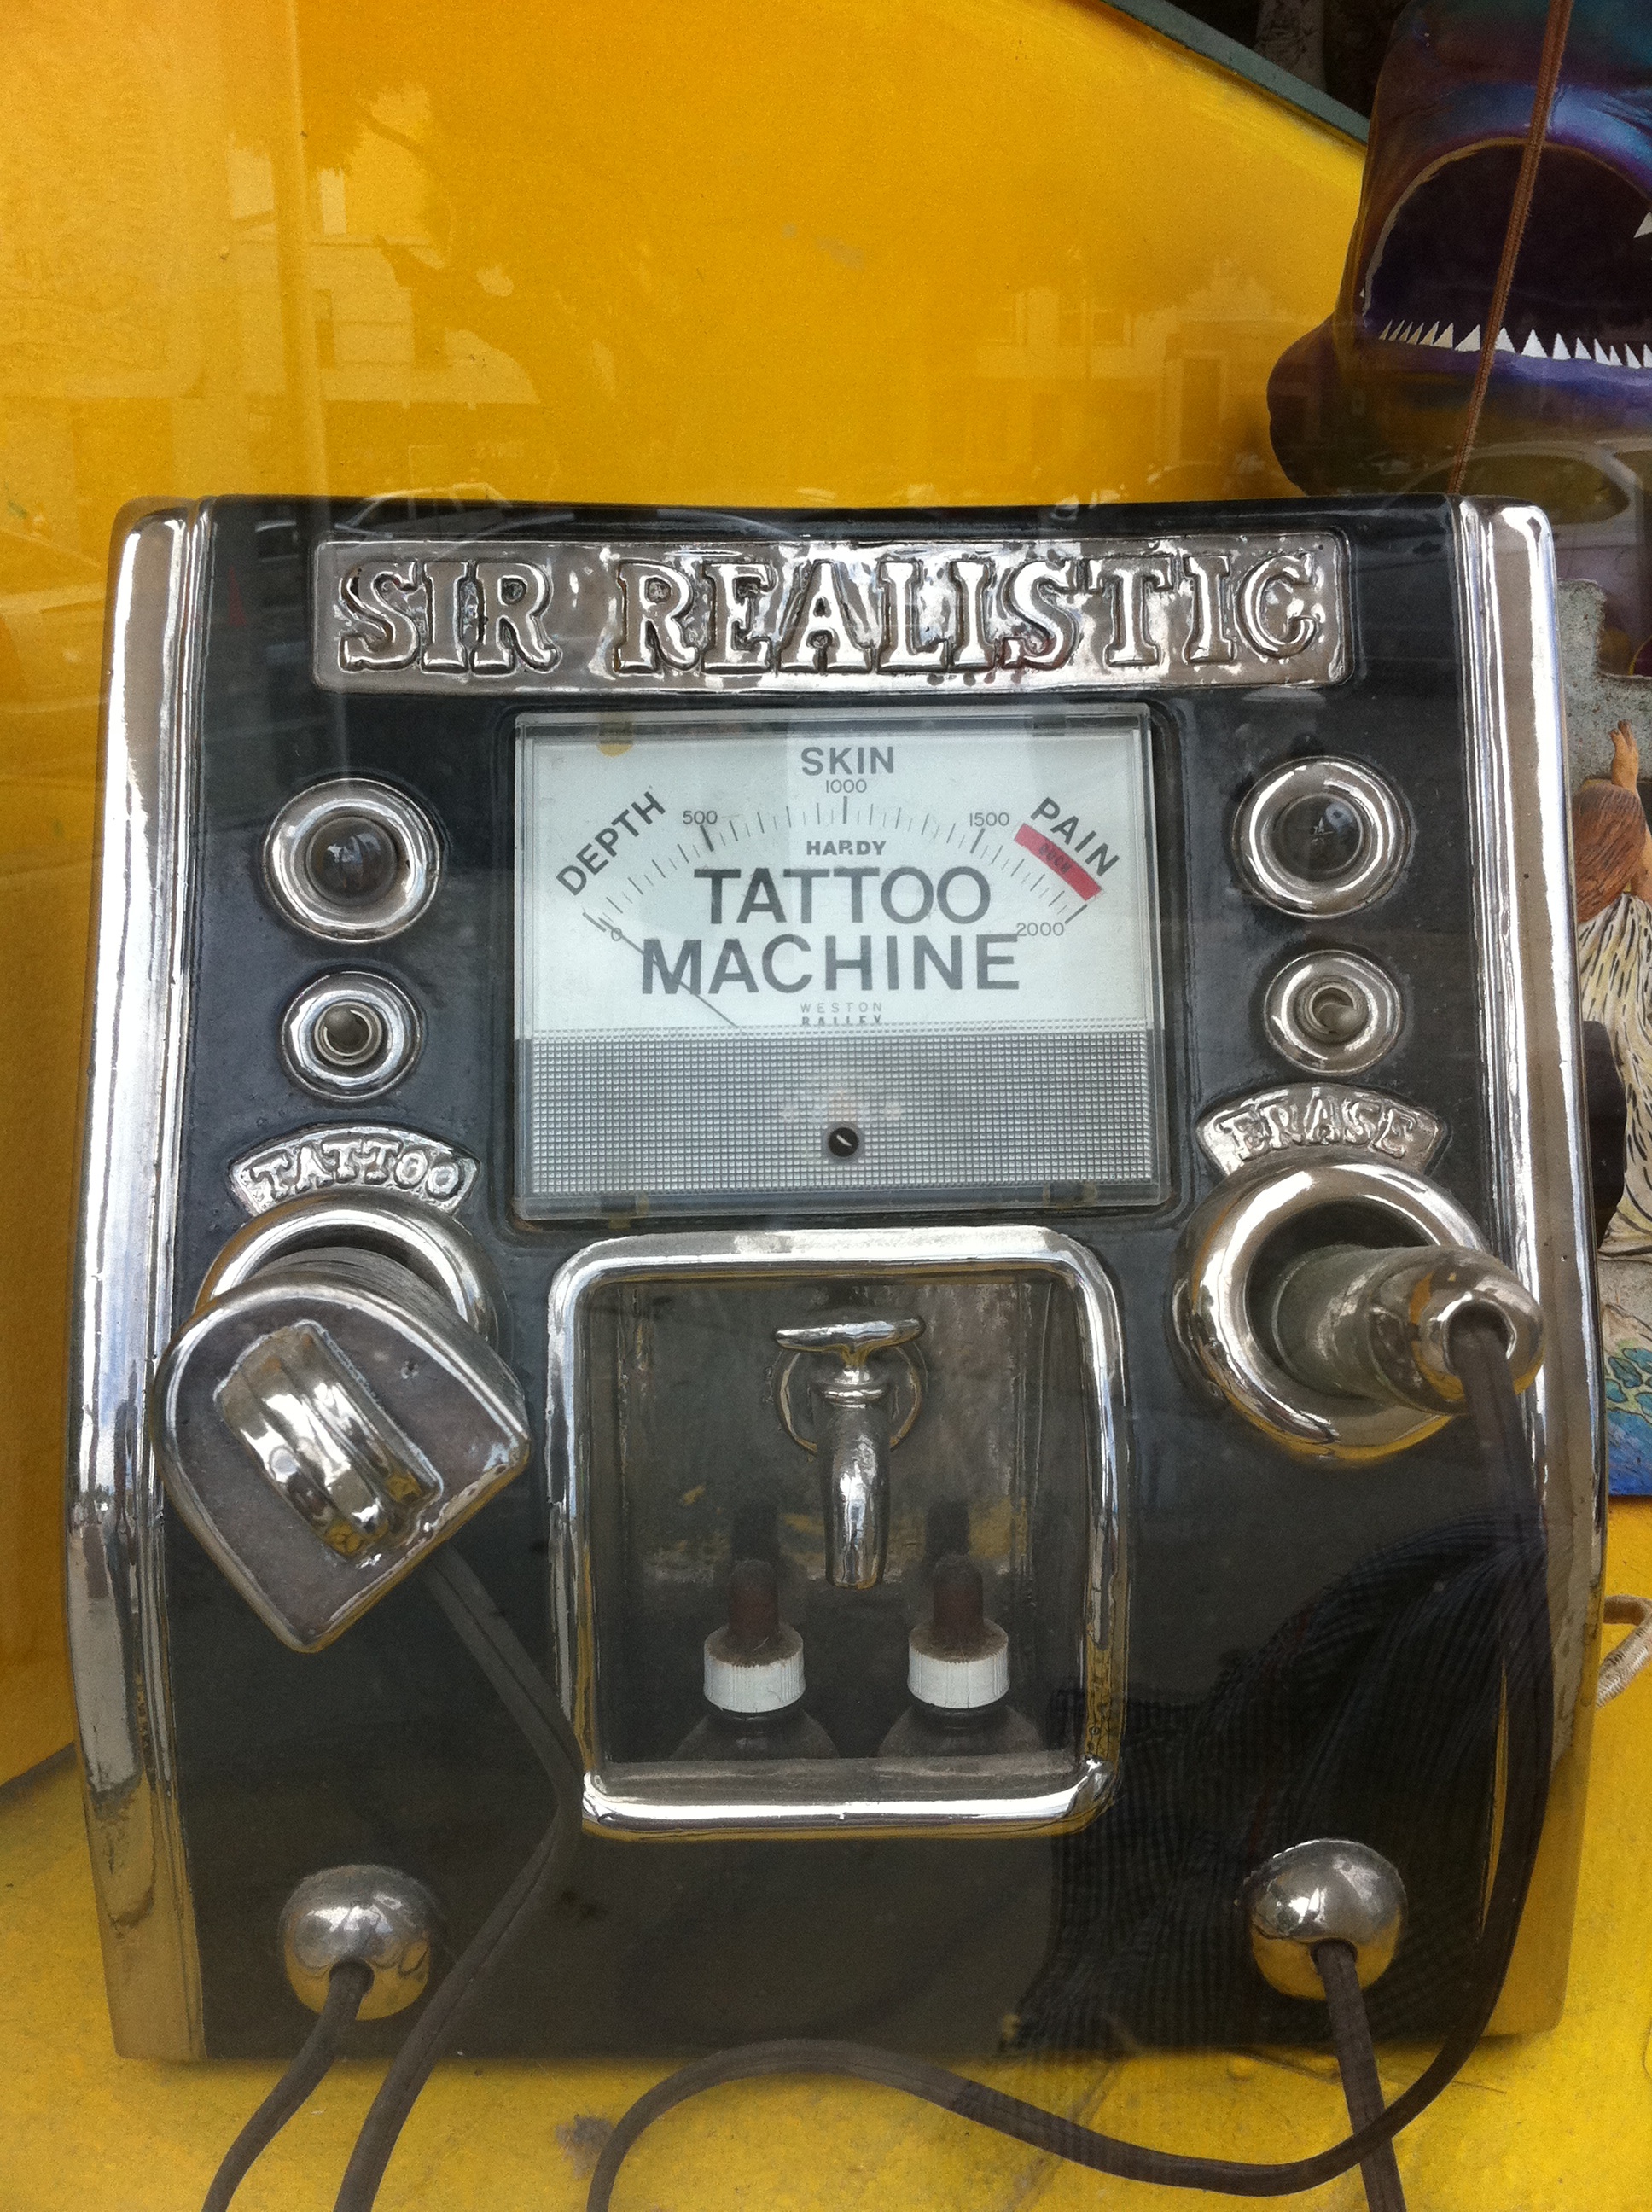 Cool Tattoo machine lol